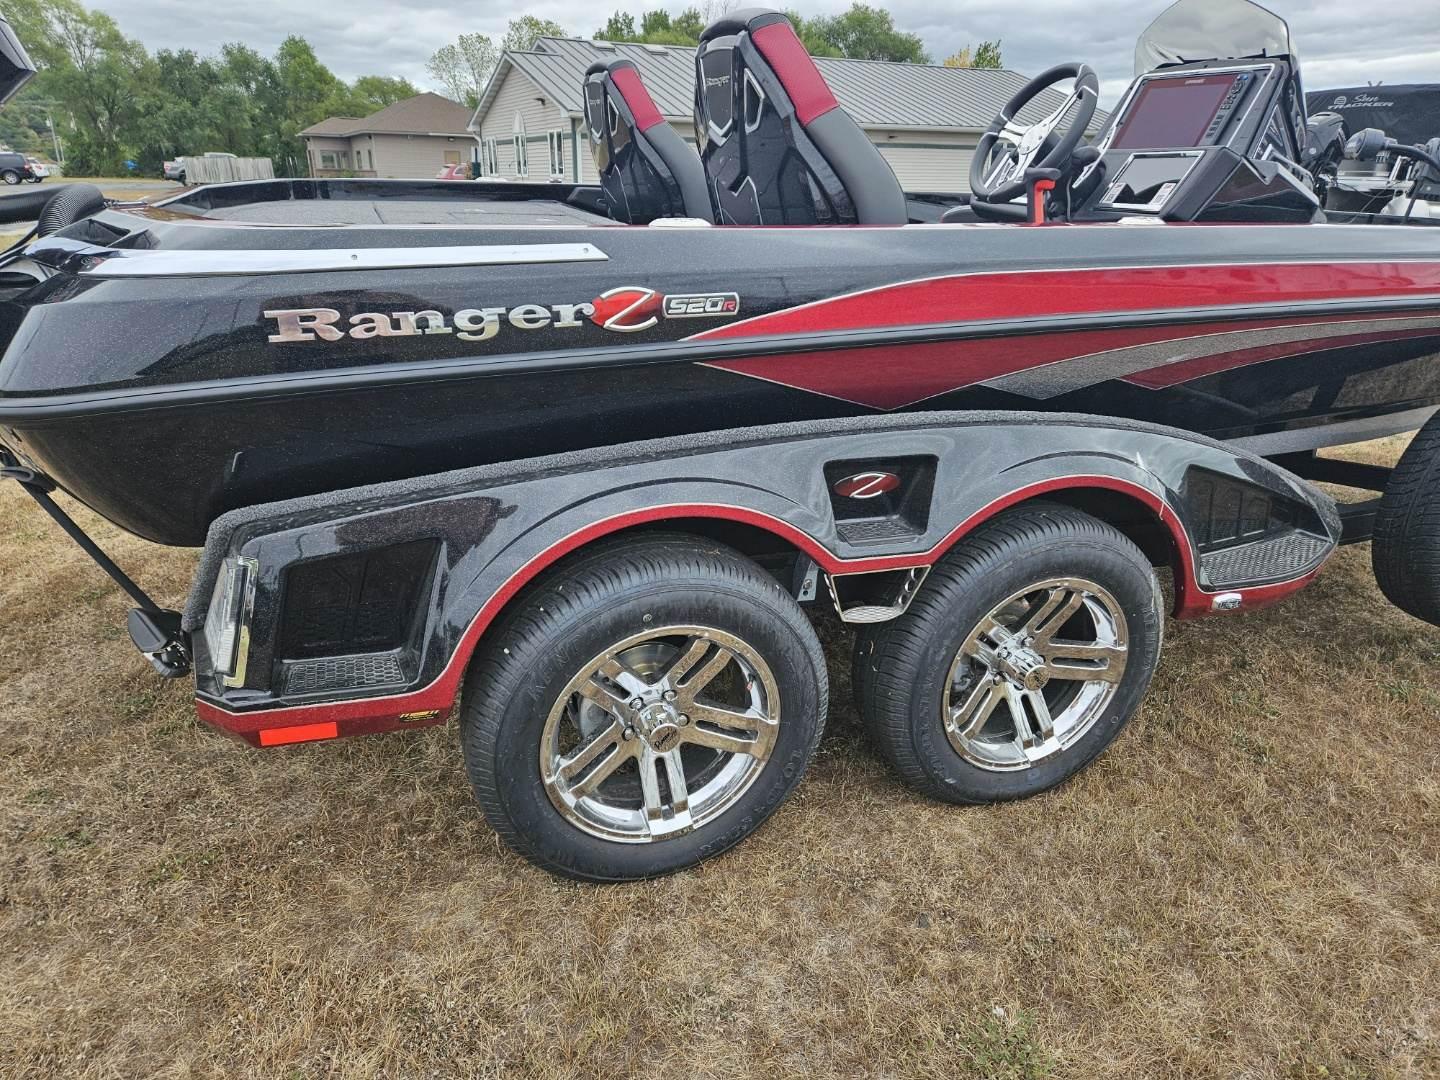 12' Ranger Pedal Kayak Propeller Drive -Fishing Kayak. Like New